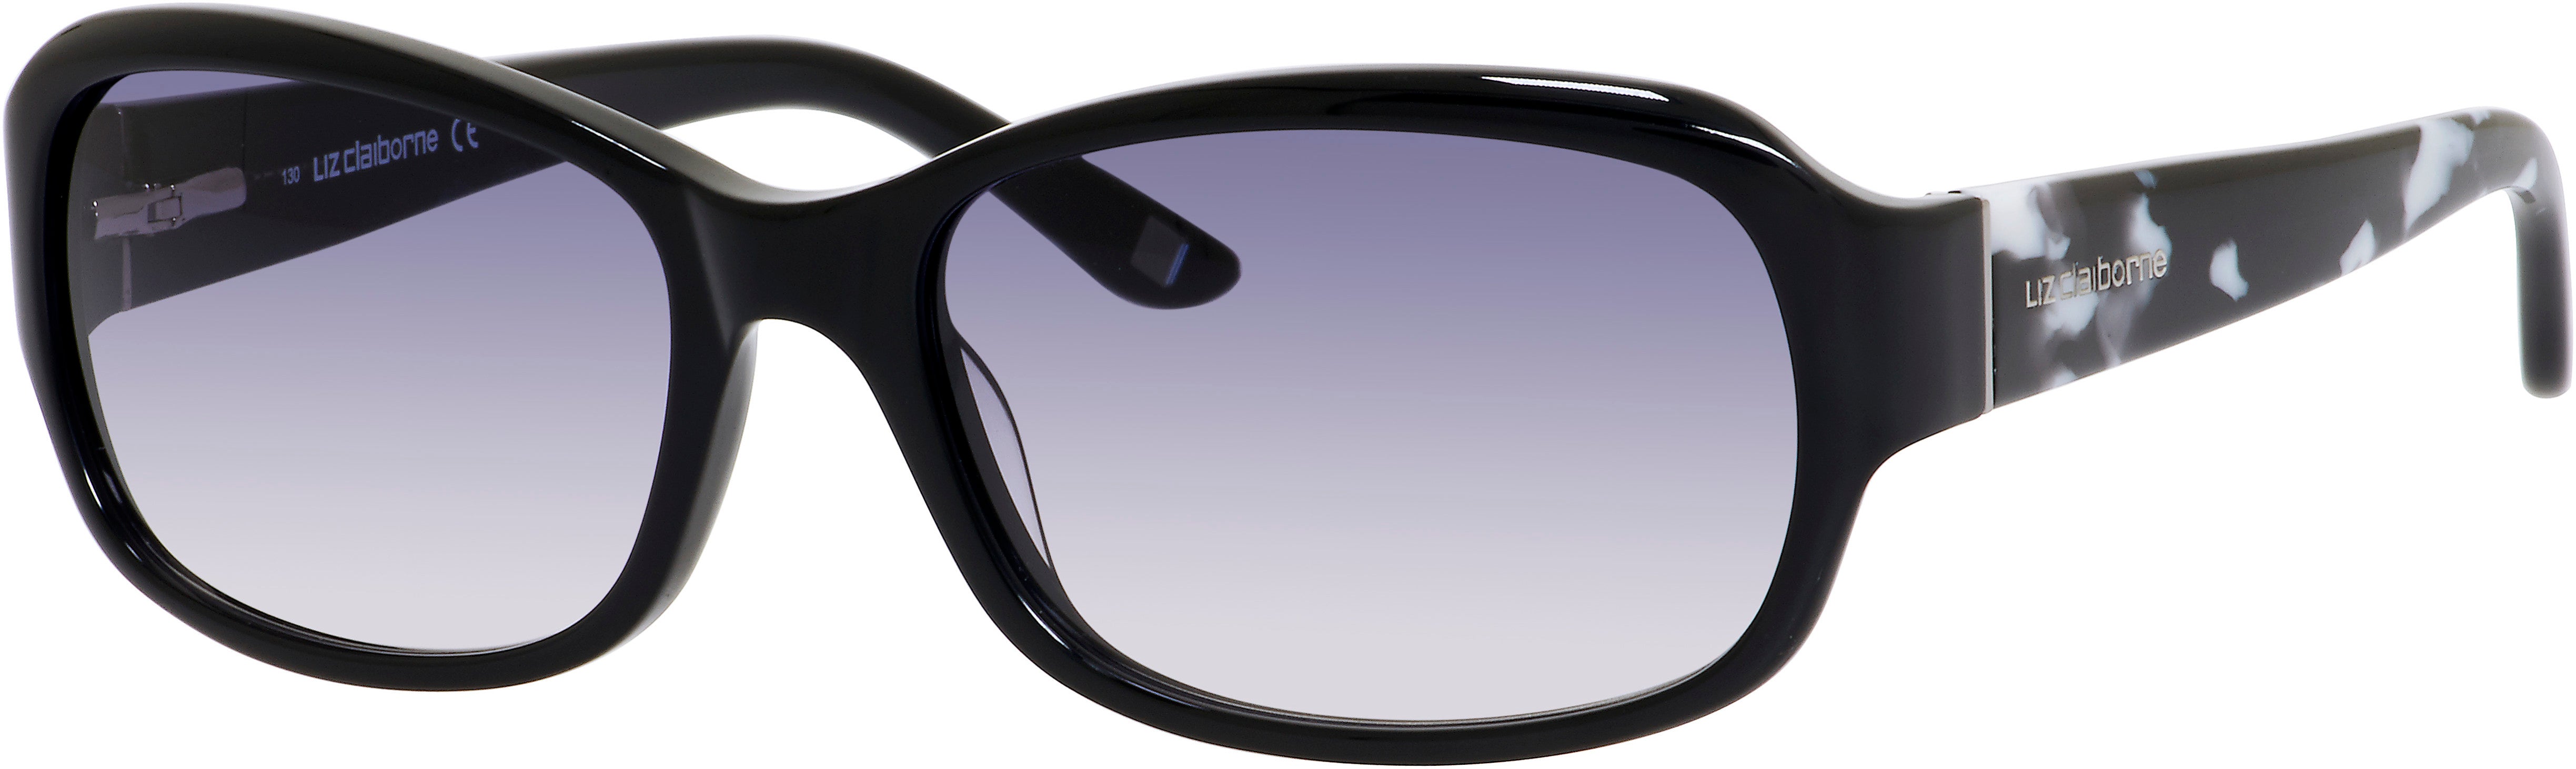  Liz Claiborne 560/S Rectangular Sunglasses 0807-0807  Black (AM Gray Gradient)